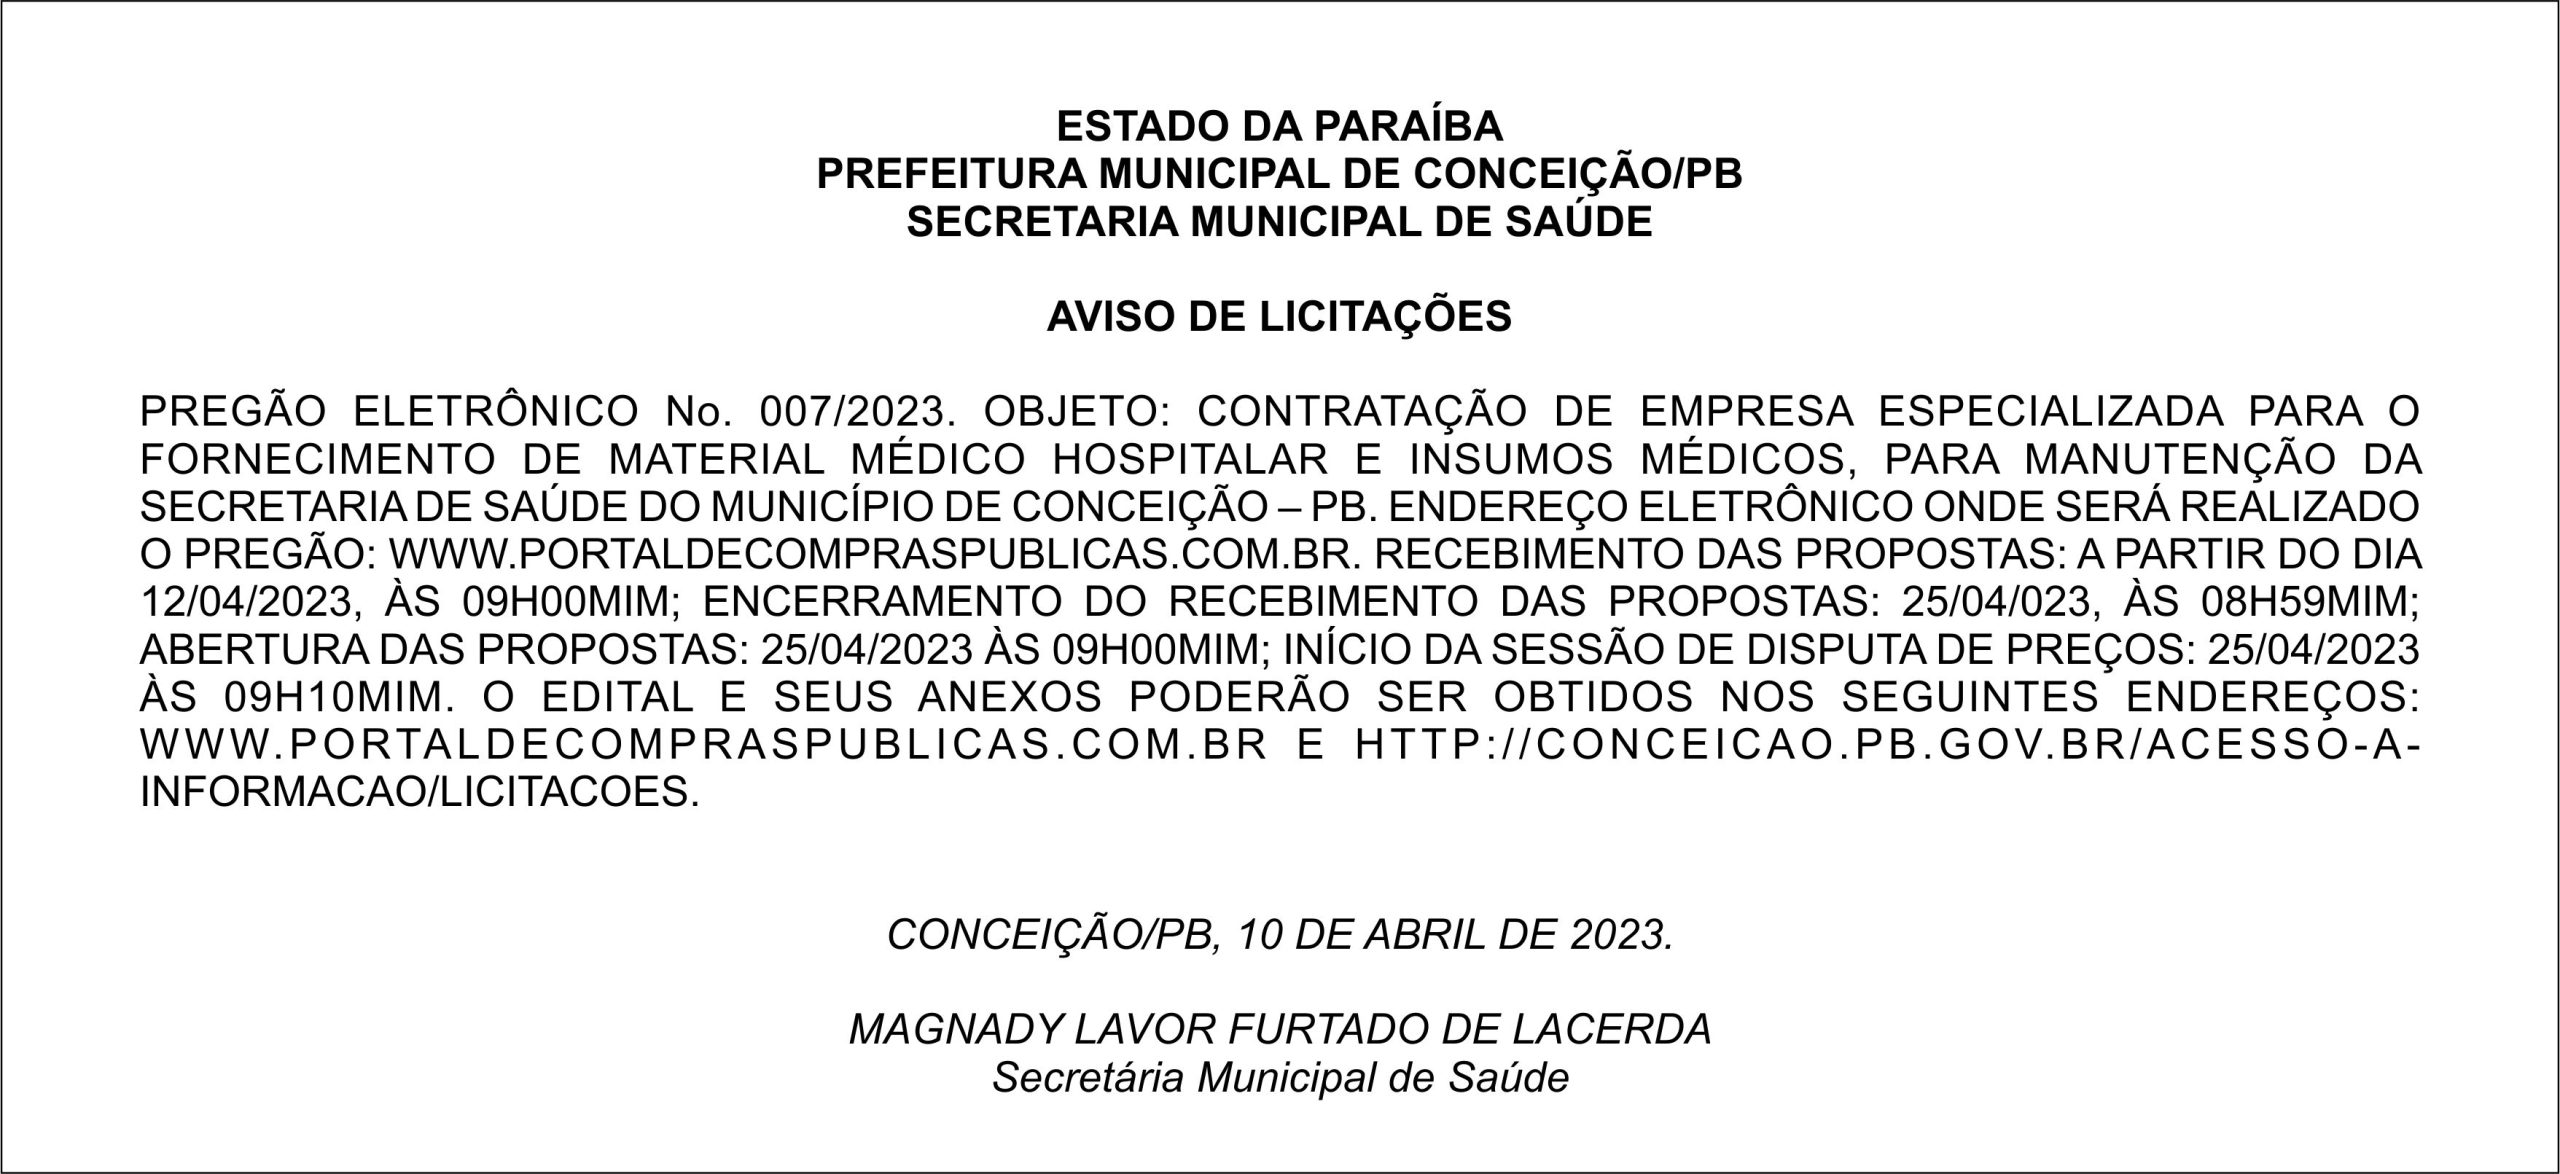 PREFEITURA MUNICIPAL DE CONCEIÇÃO/PB – AVISO DE LICITAÇÕES – PREGÃO ELETRÔNICO No. 007/2023.